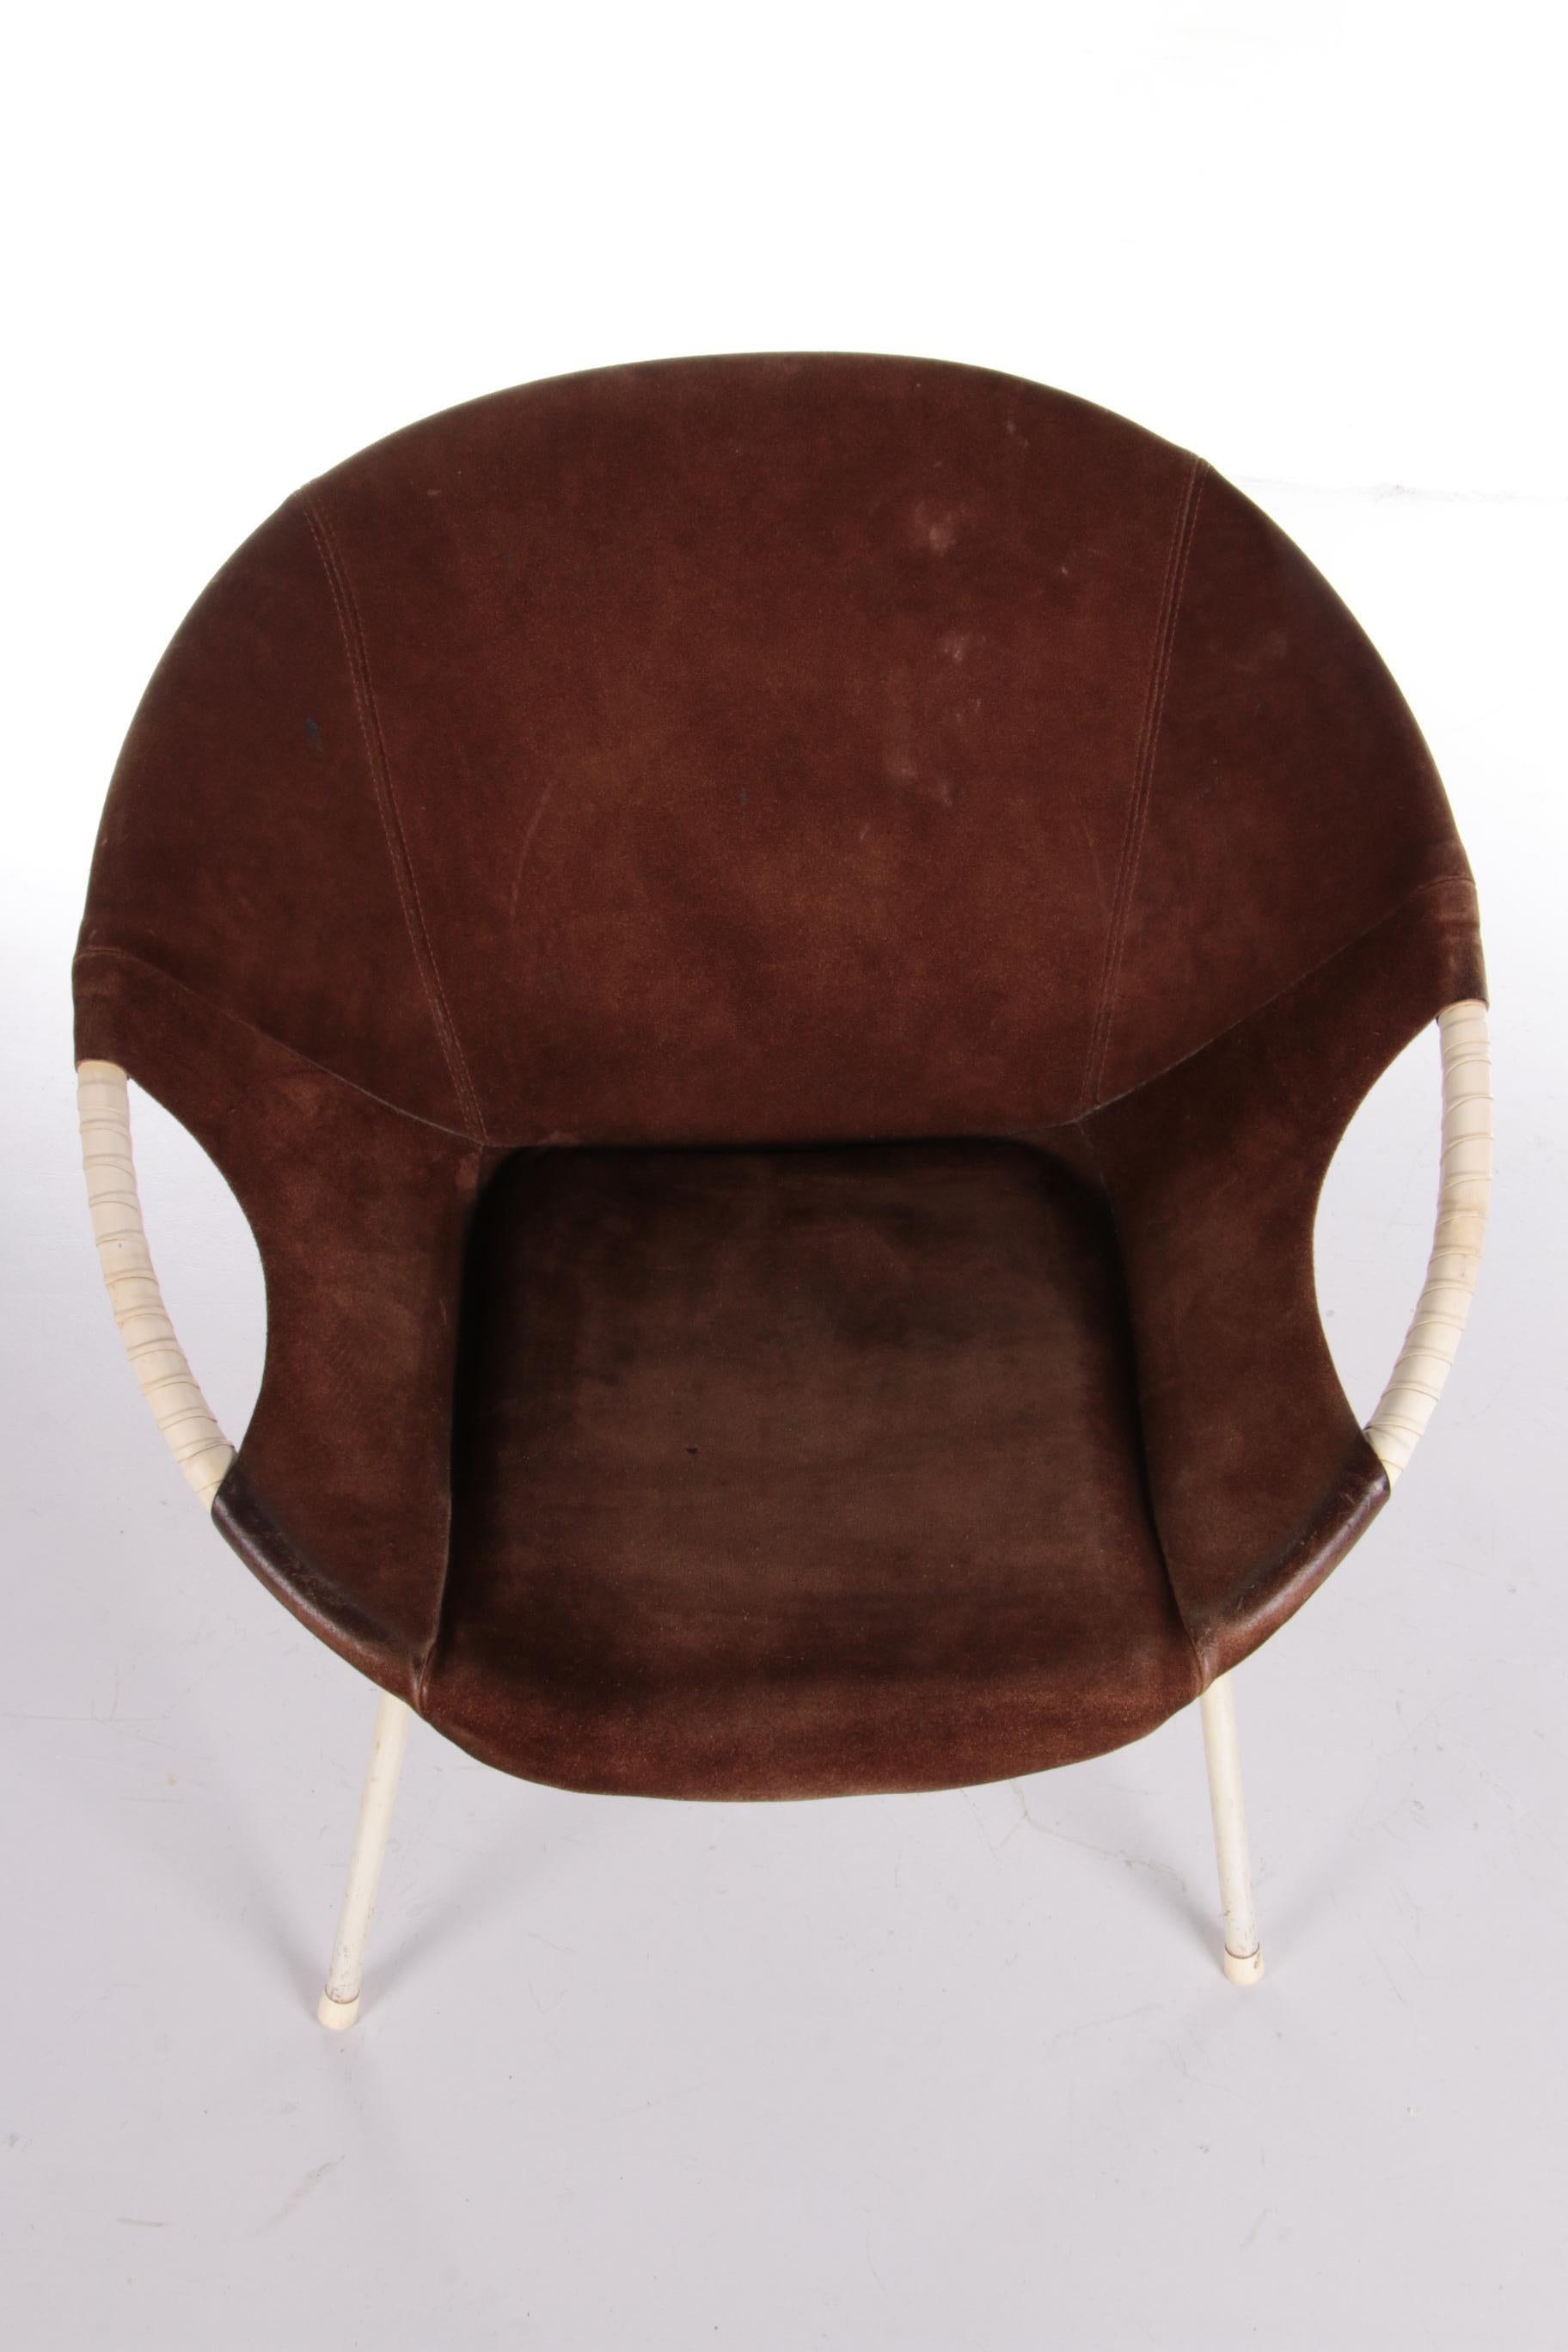 Vintage Balloon Chair Design by Lusch Erzeugnis, 1960s 2